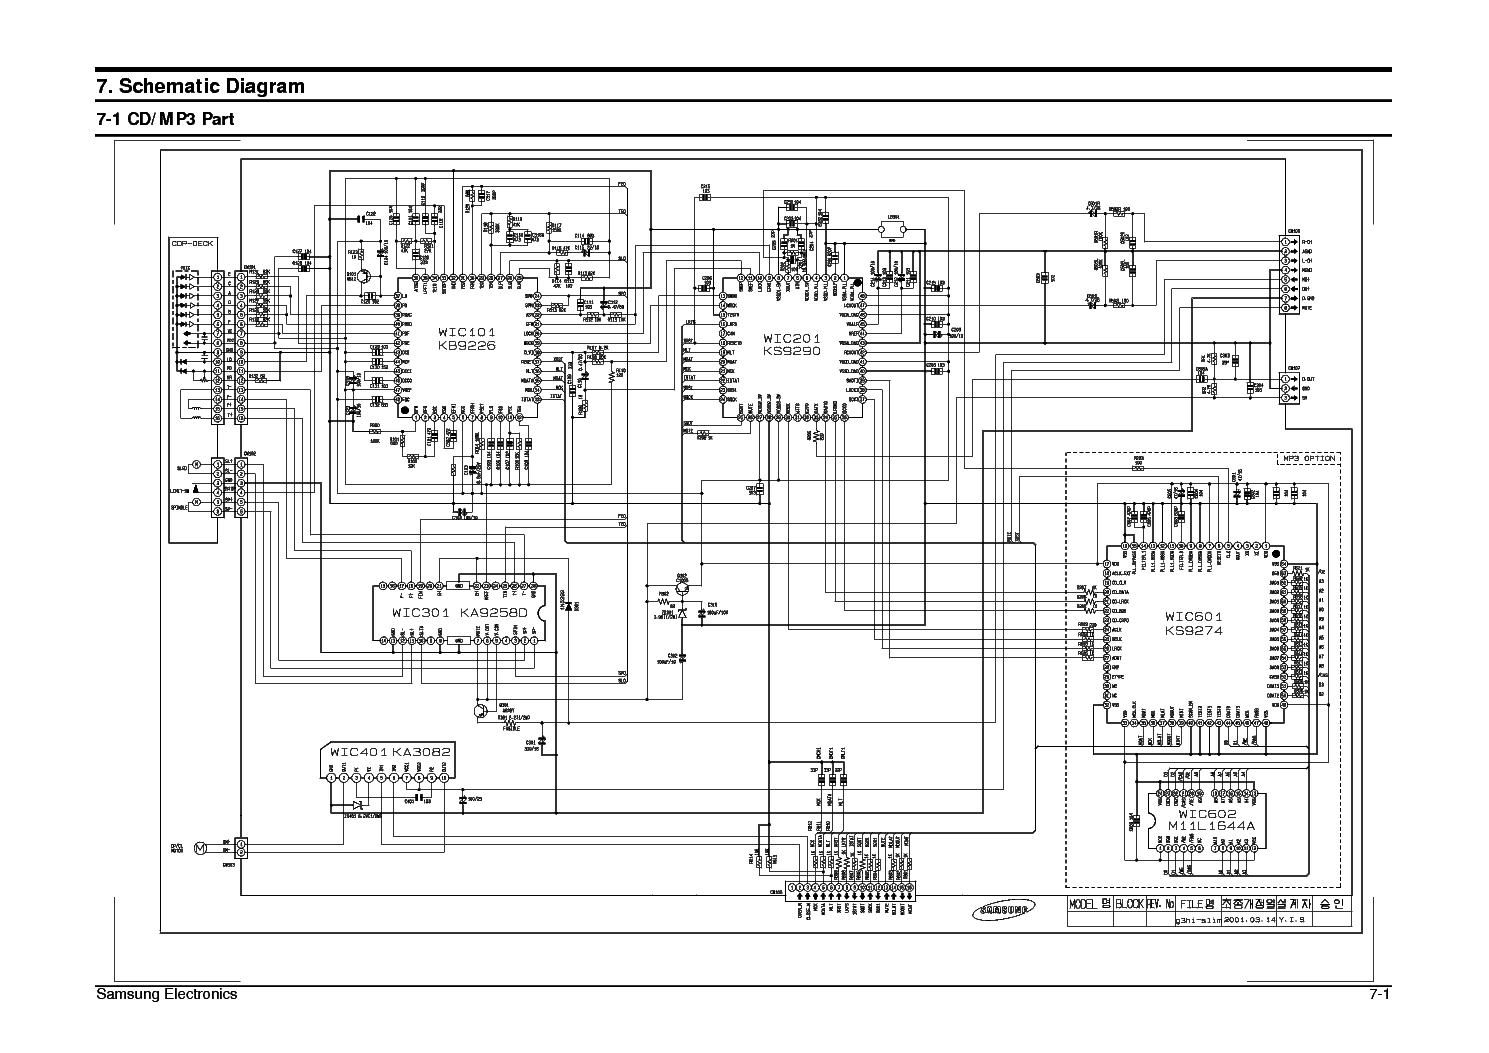 Samsung J5 Schematic Diagram Pdf